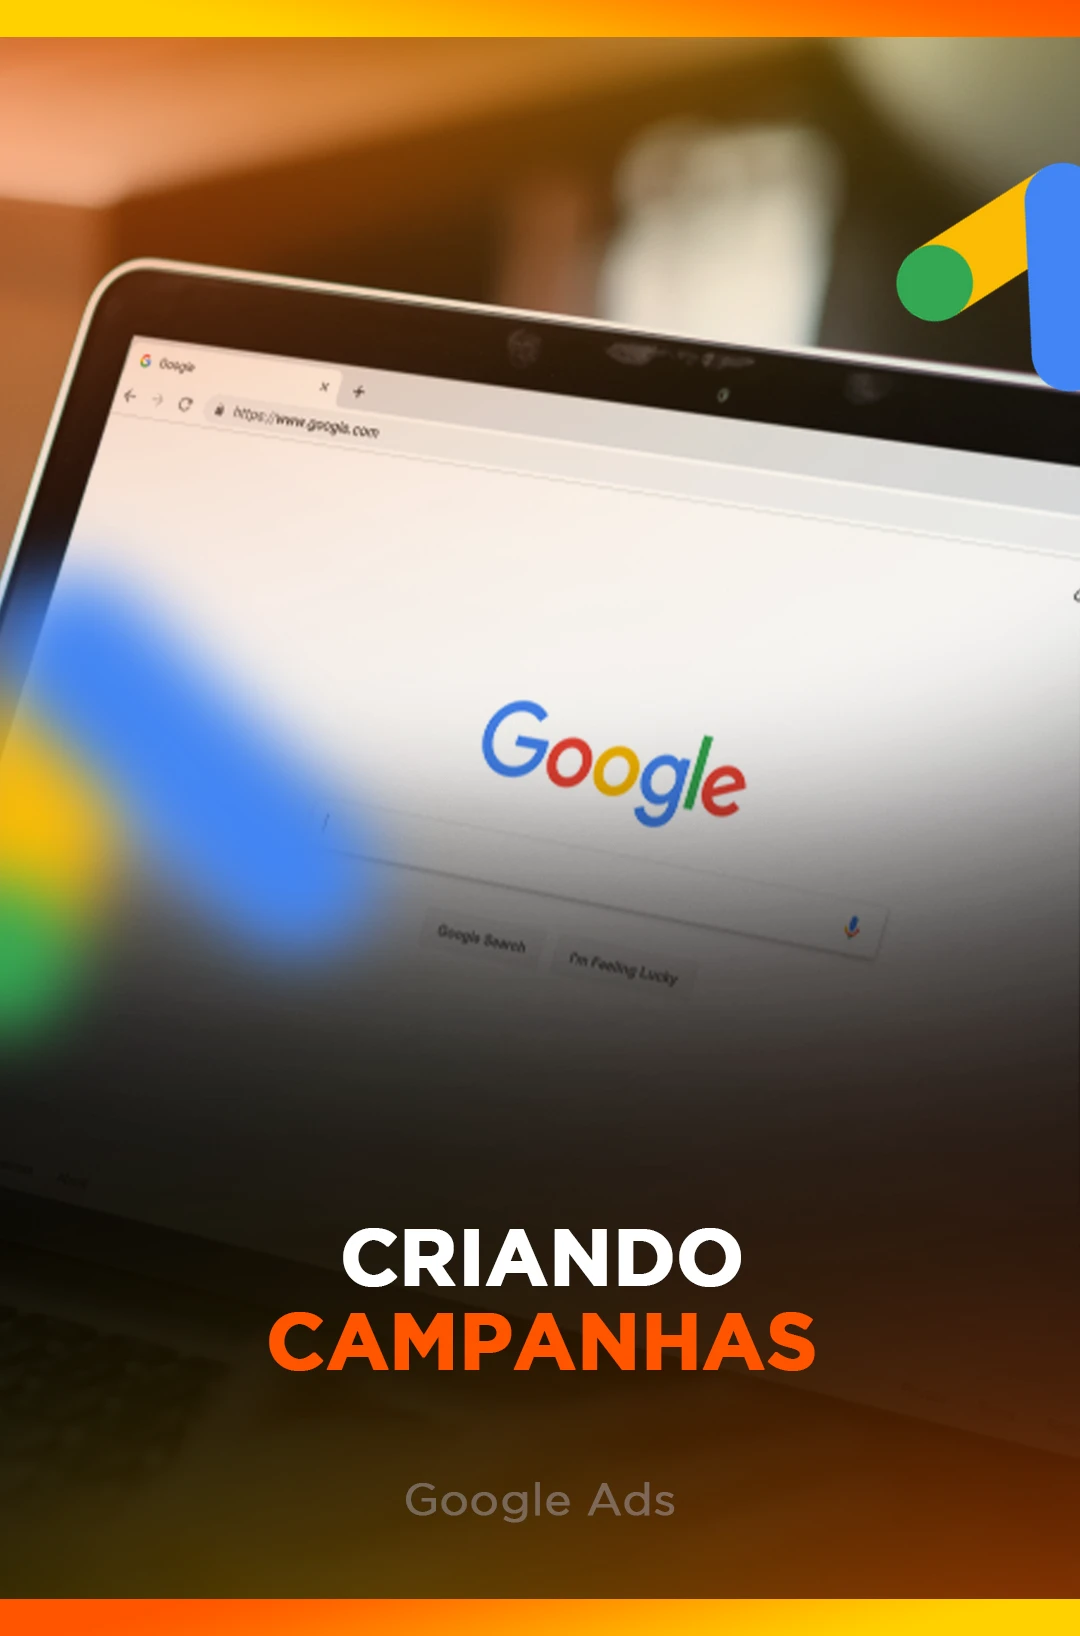 CRIANDO CAMPANHAS - GOOGLE ADS